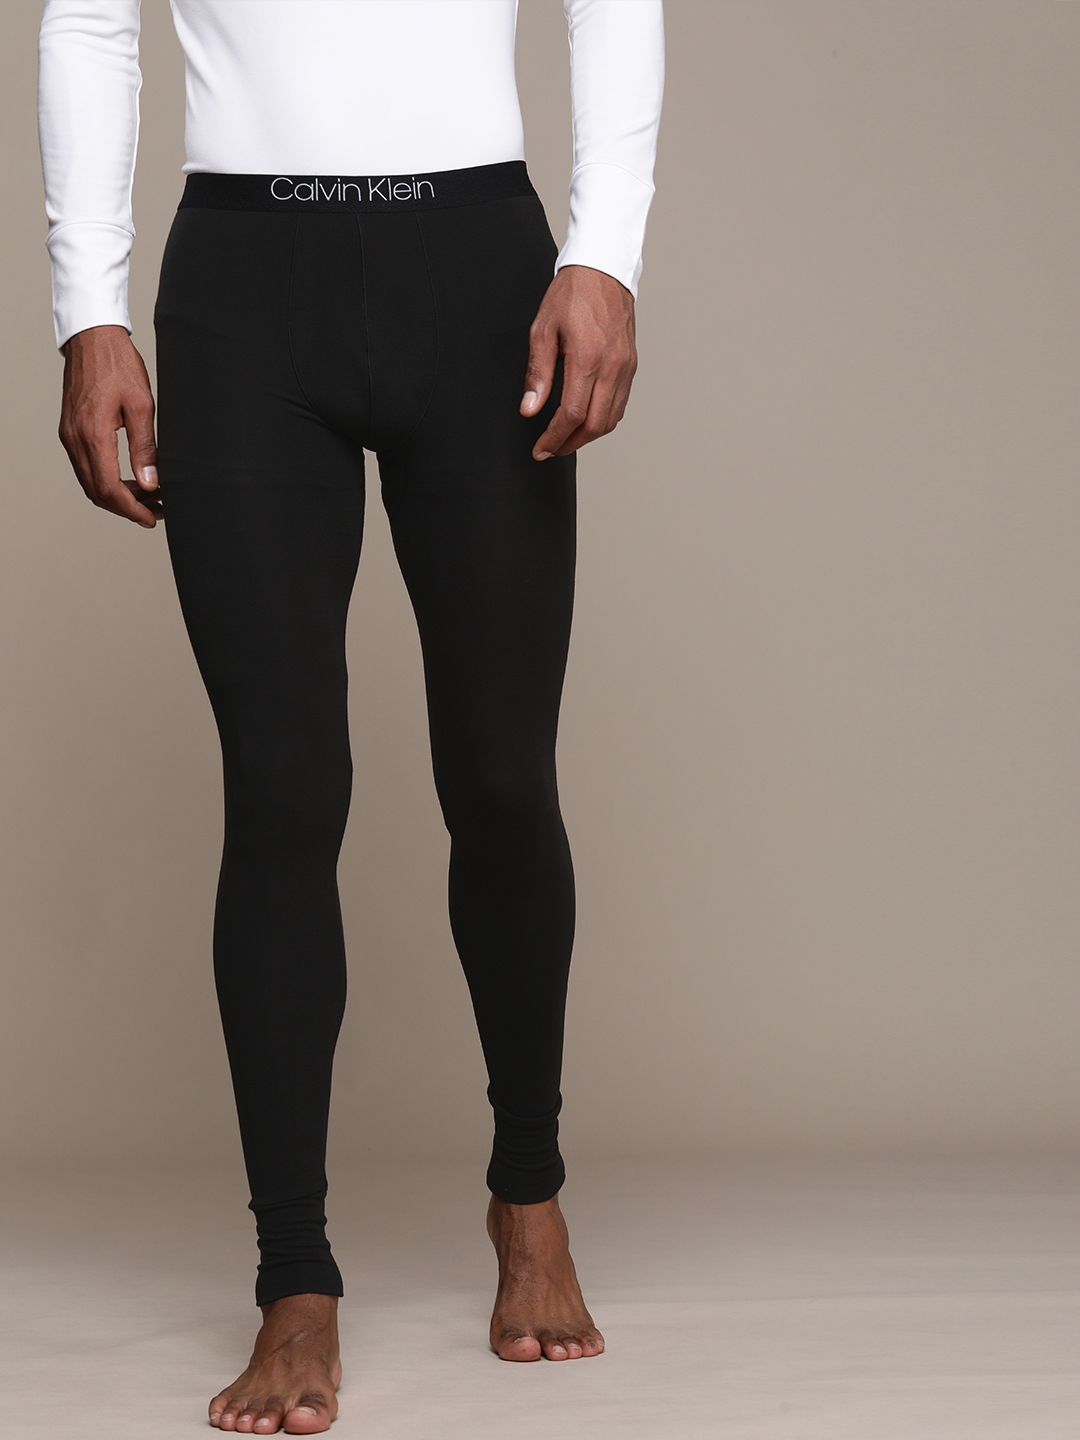 Calvin Klein Underwear Men Black Solid Thermal Bottom